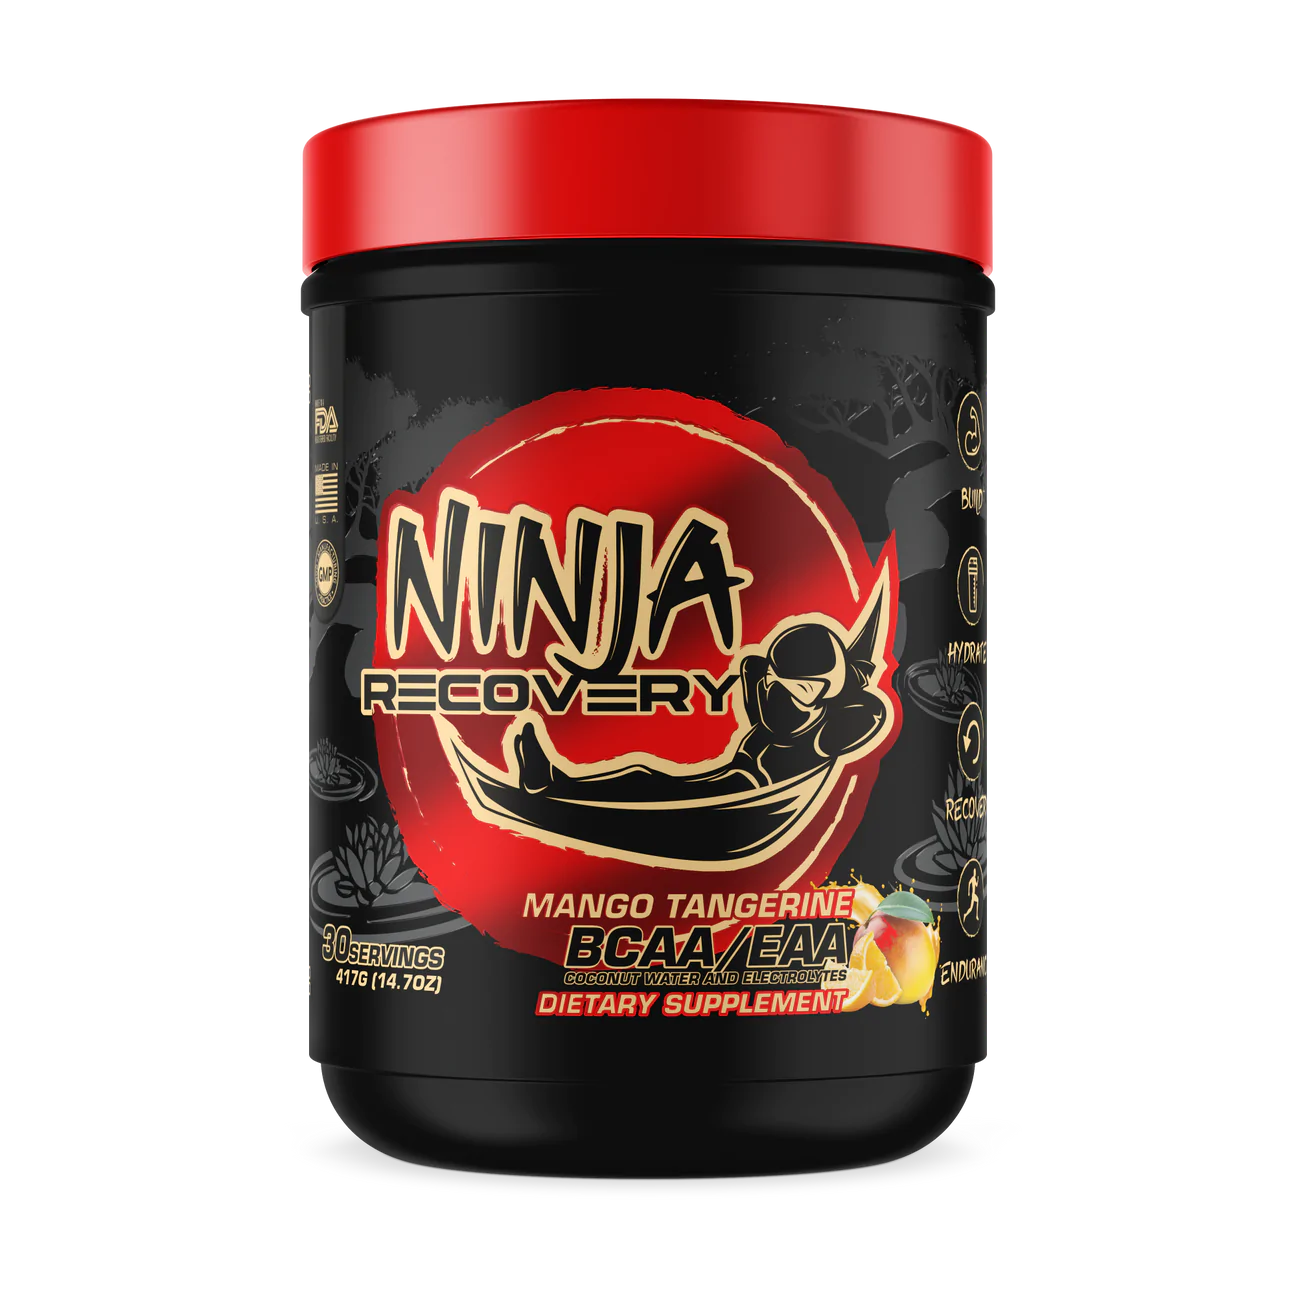 Ninja Recovery BCAA + EAA 417g